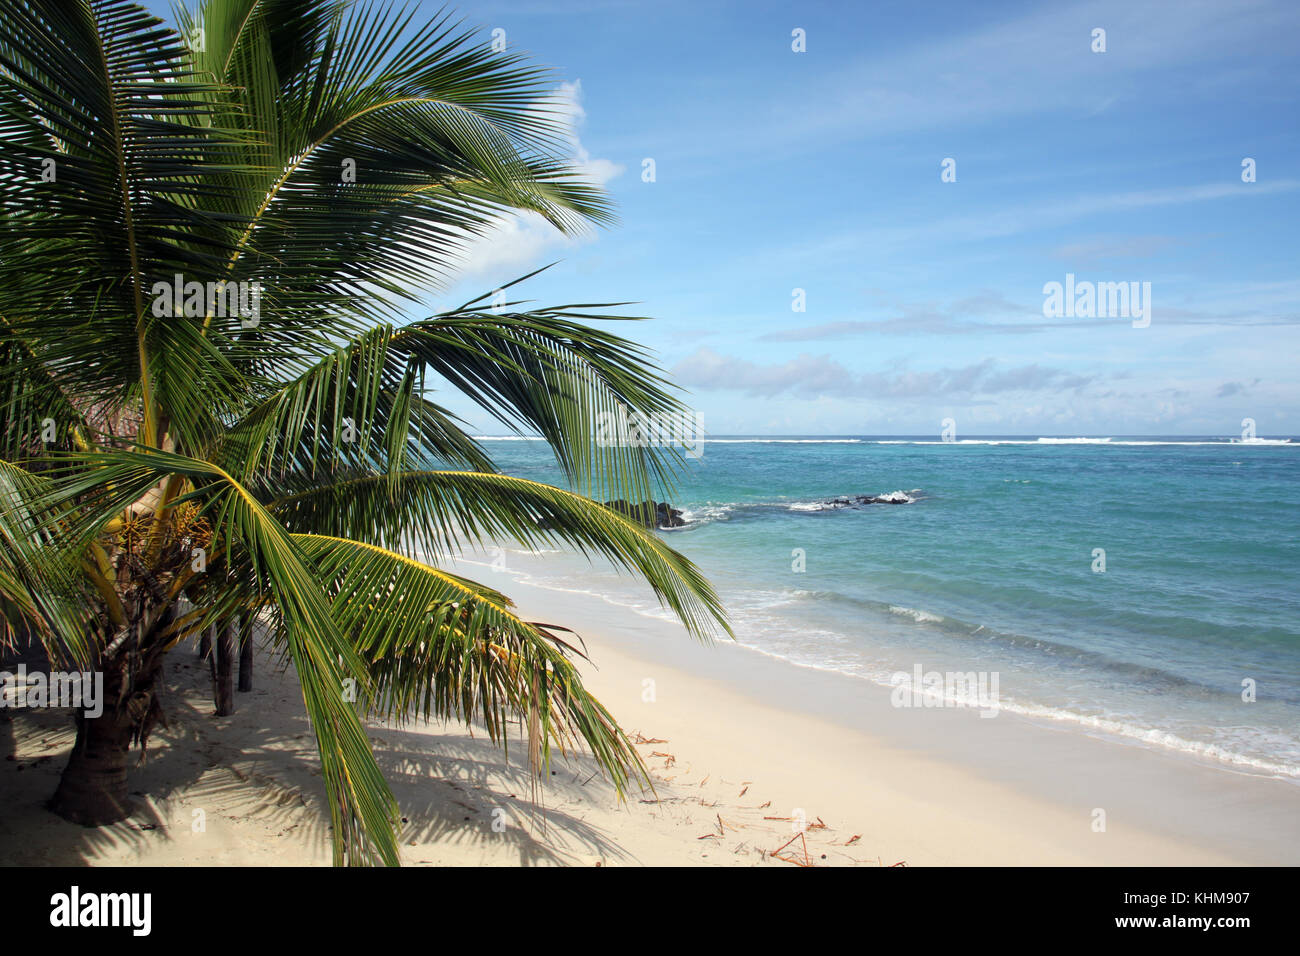 Playa palmeras arena blanca on Craiyon